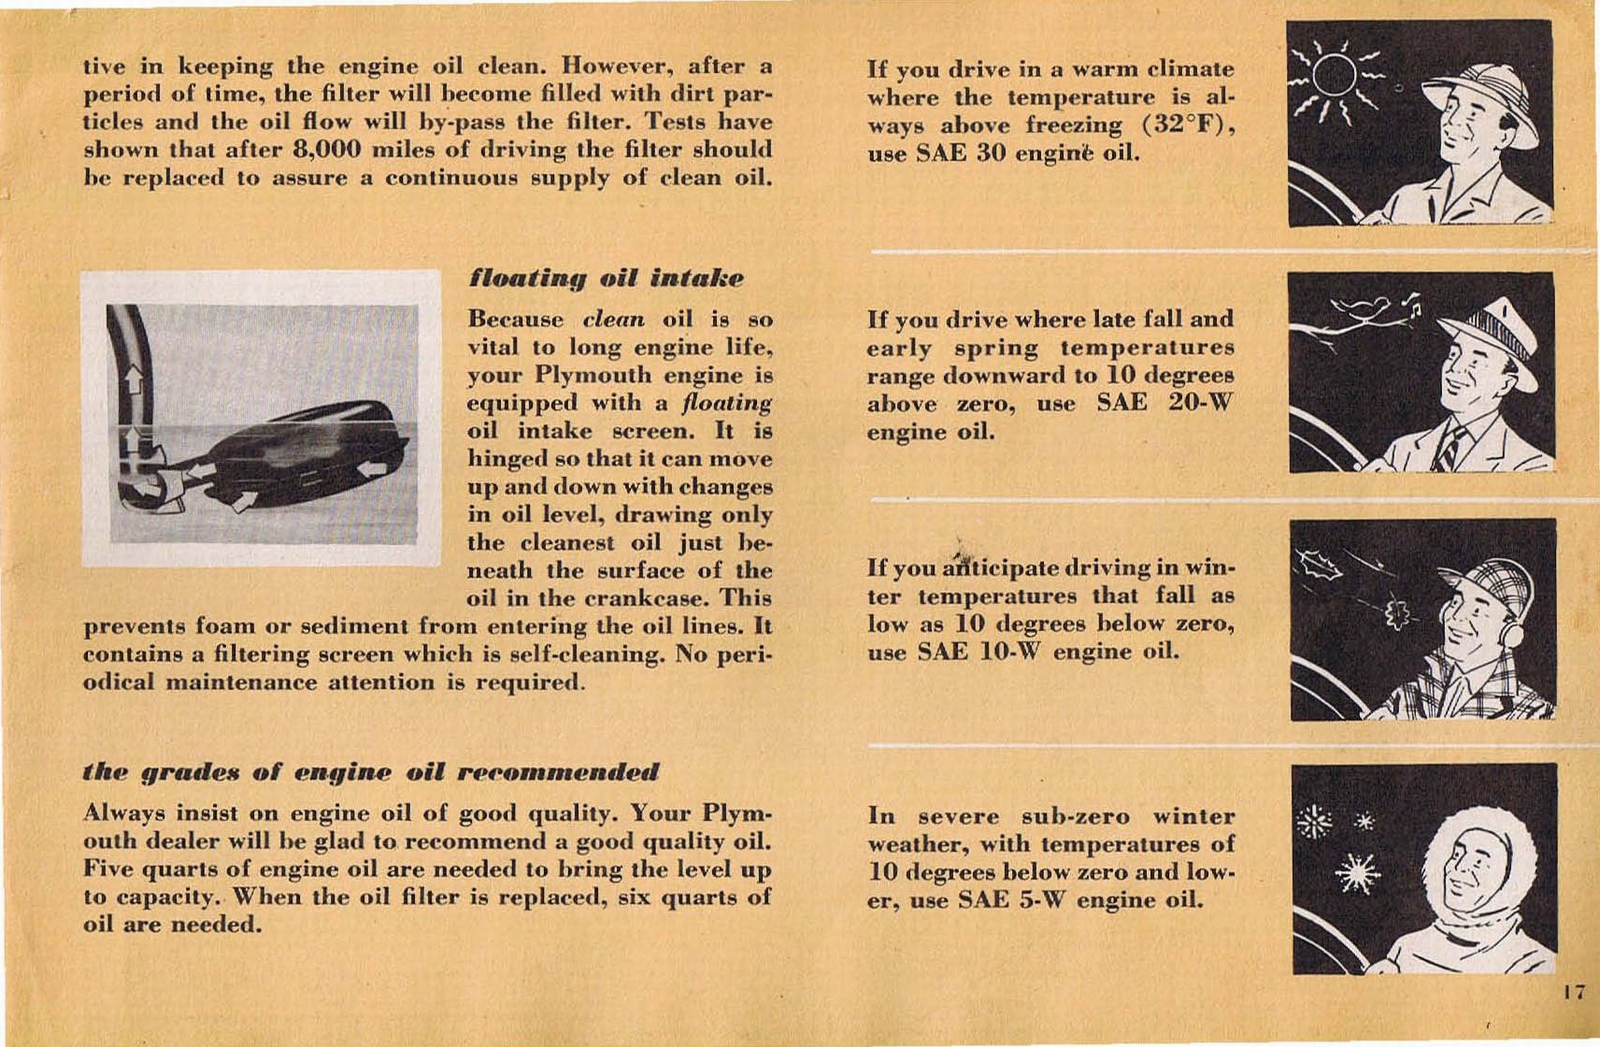 n_1953 Plymouth Owners Manual-17.jpg